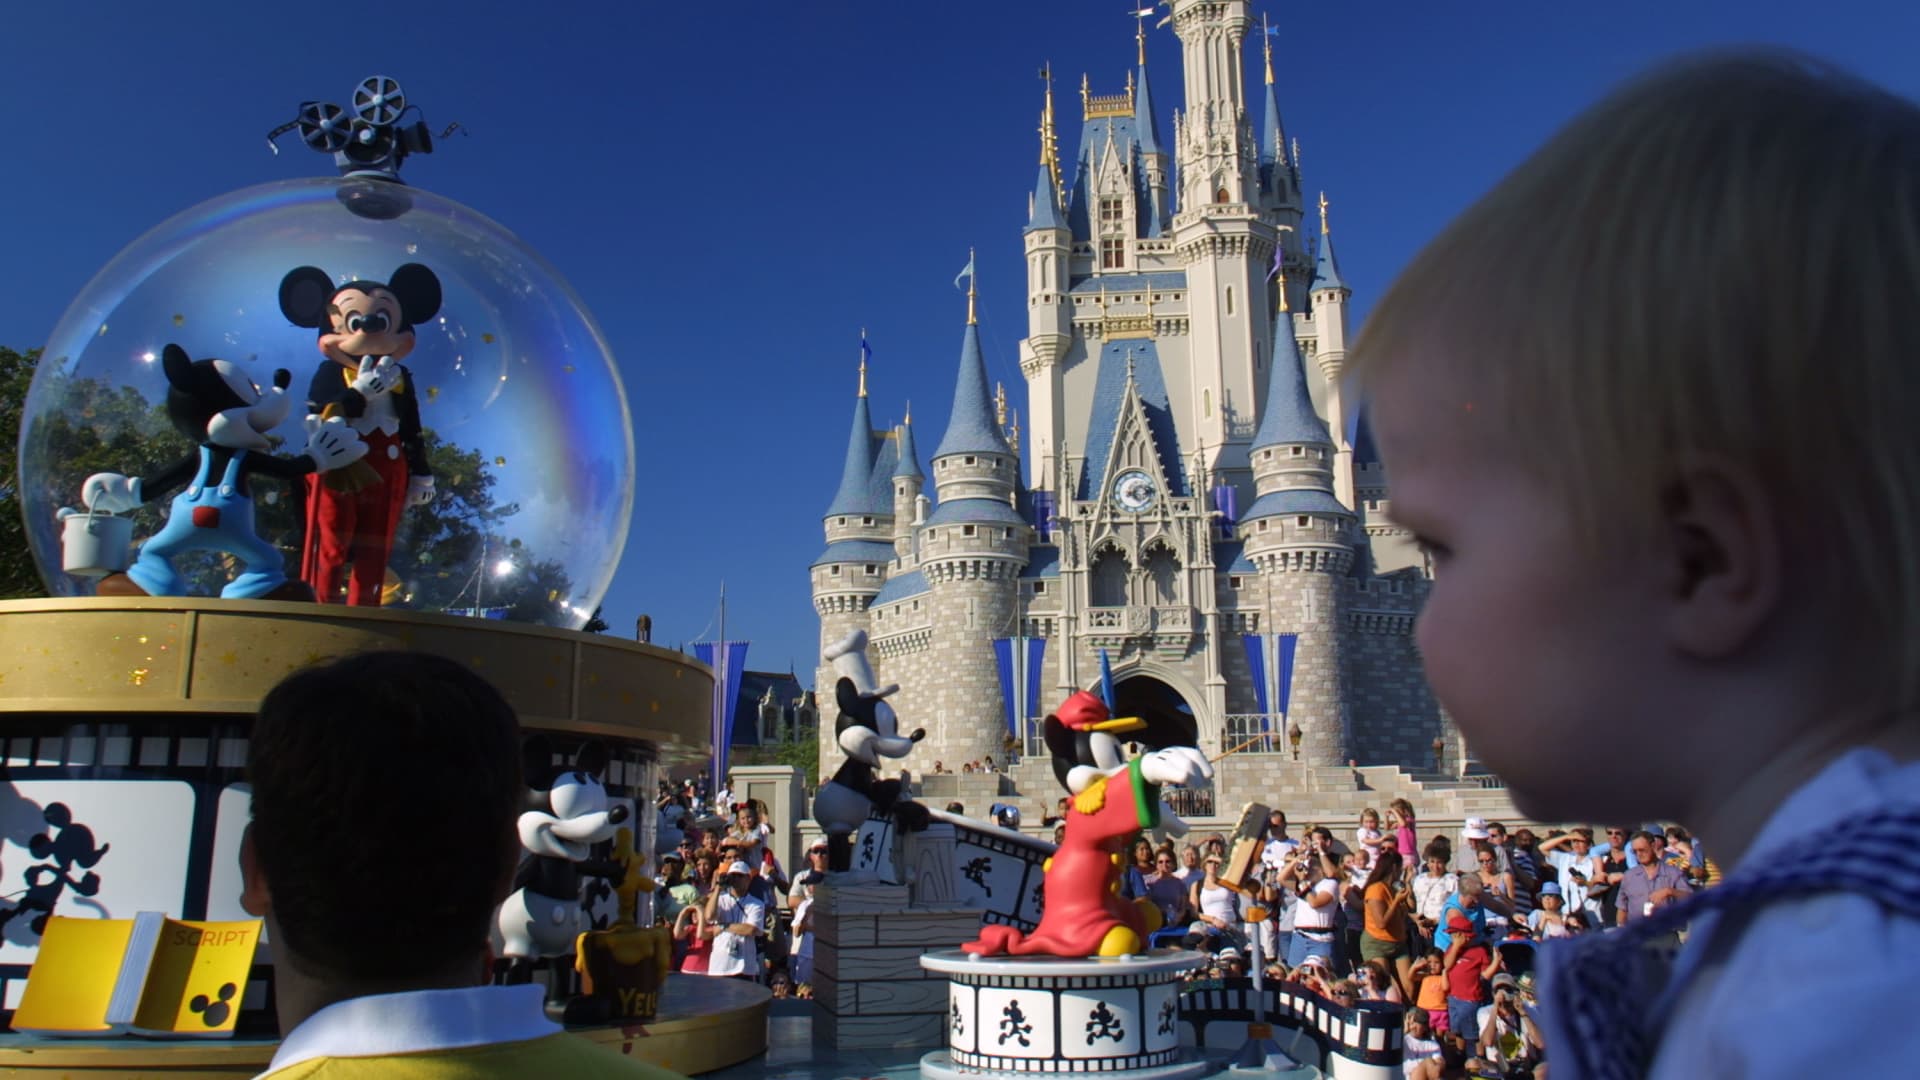 Dyrektor generalny Disneya, Bob Iger, podejmuje działania, które powinny zadowolić inwestorów